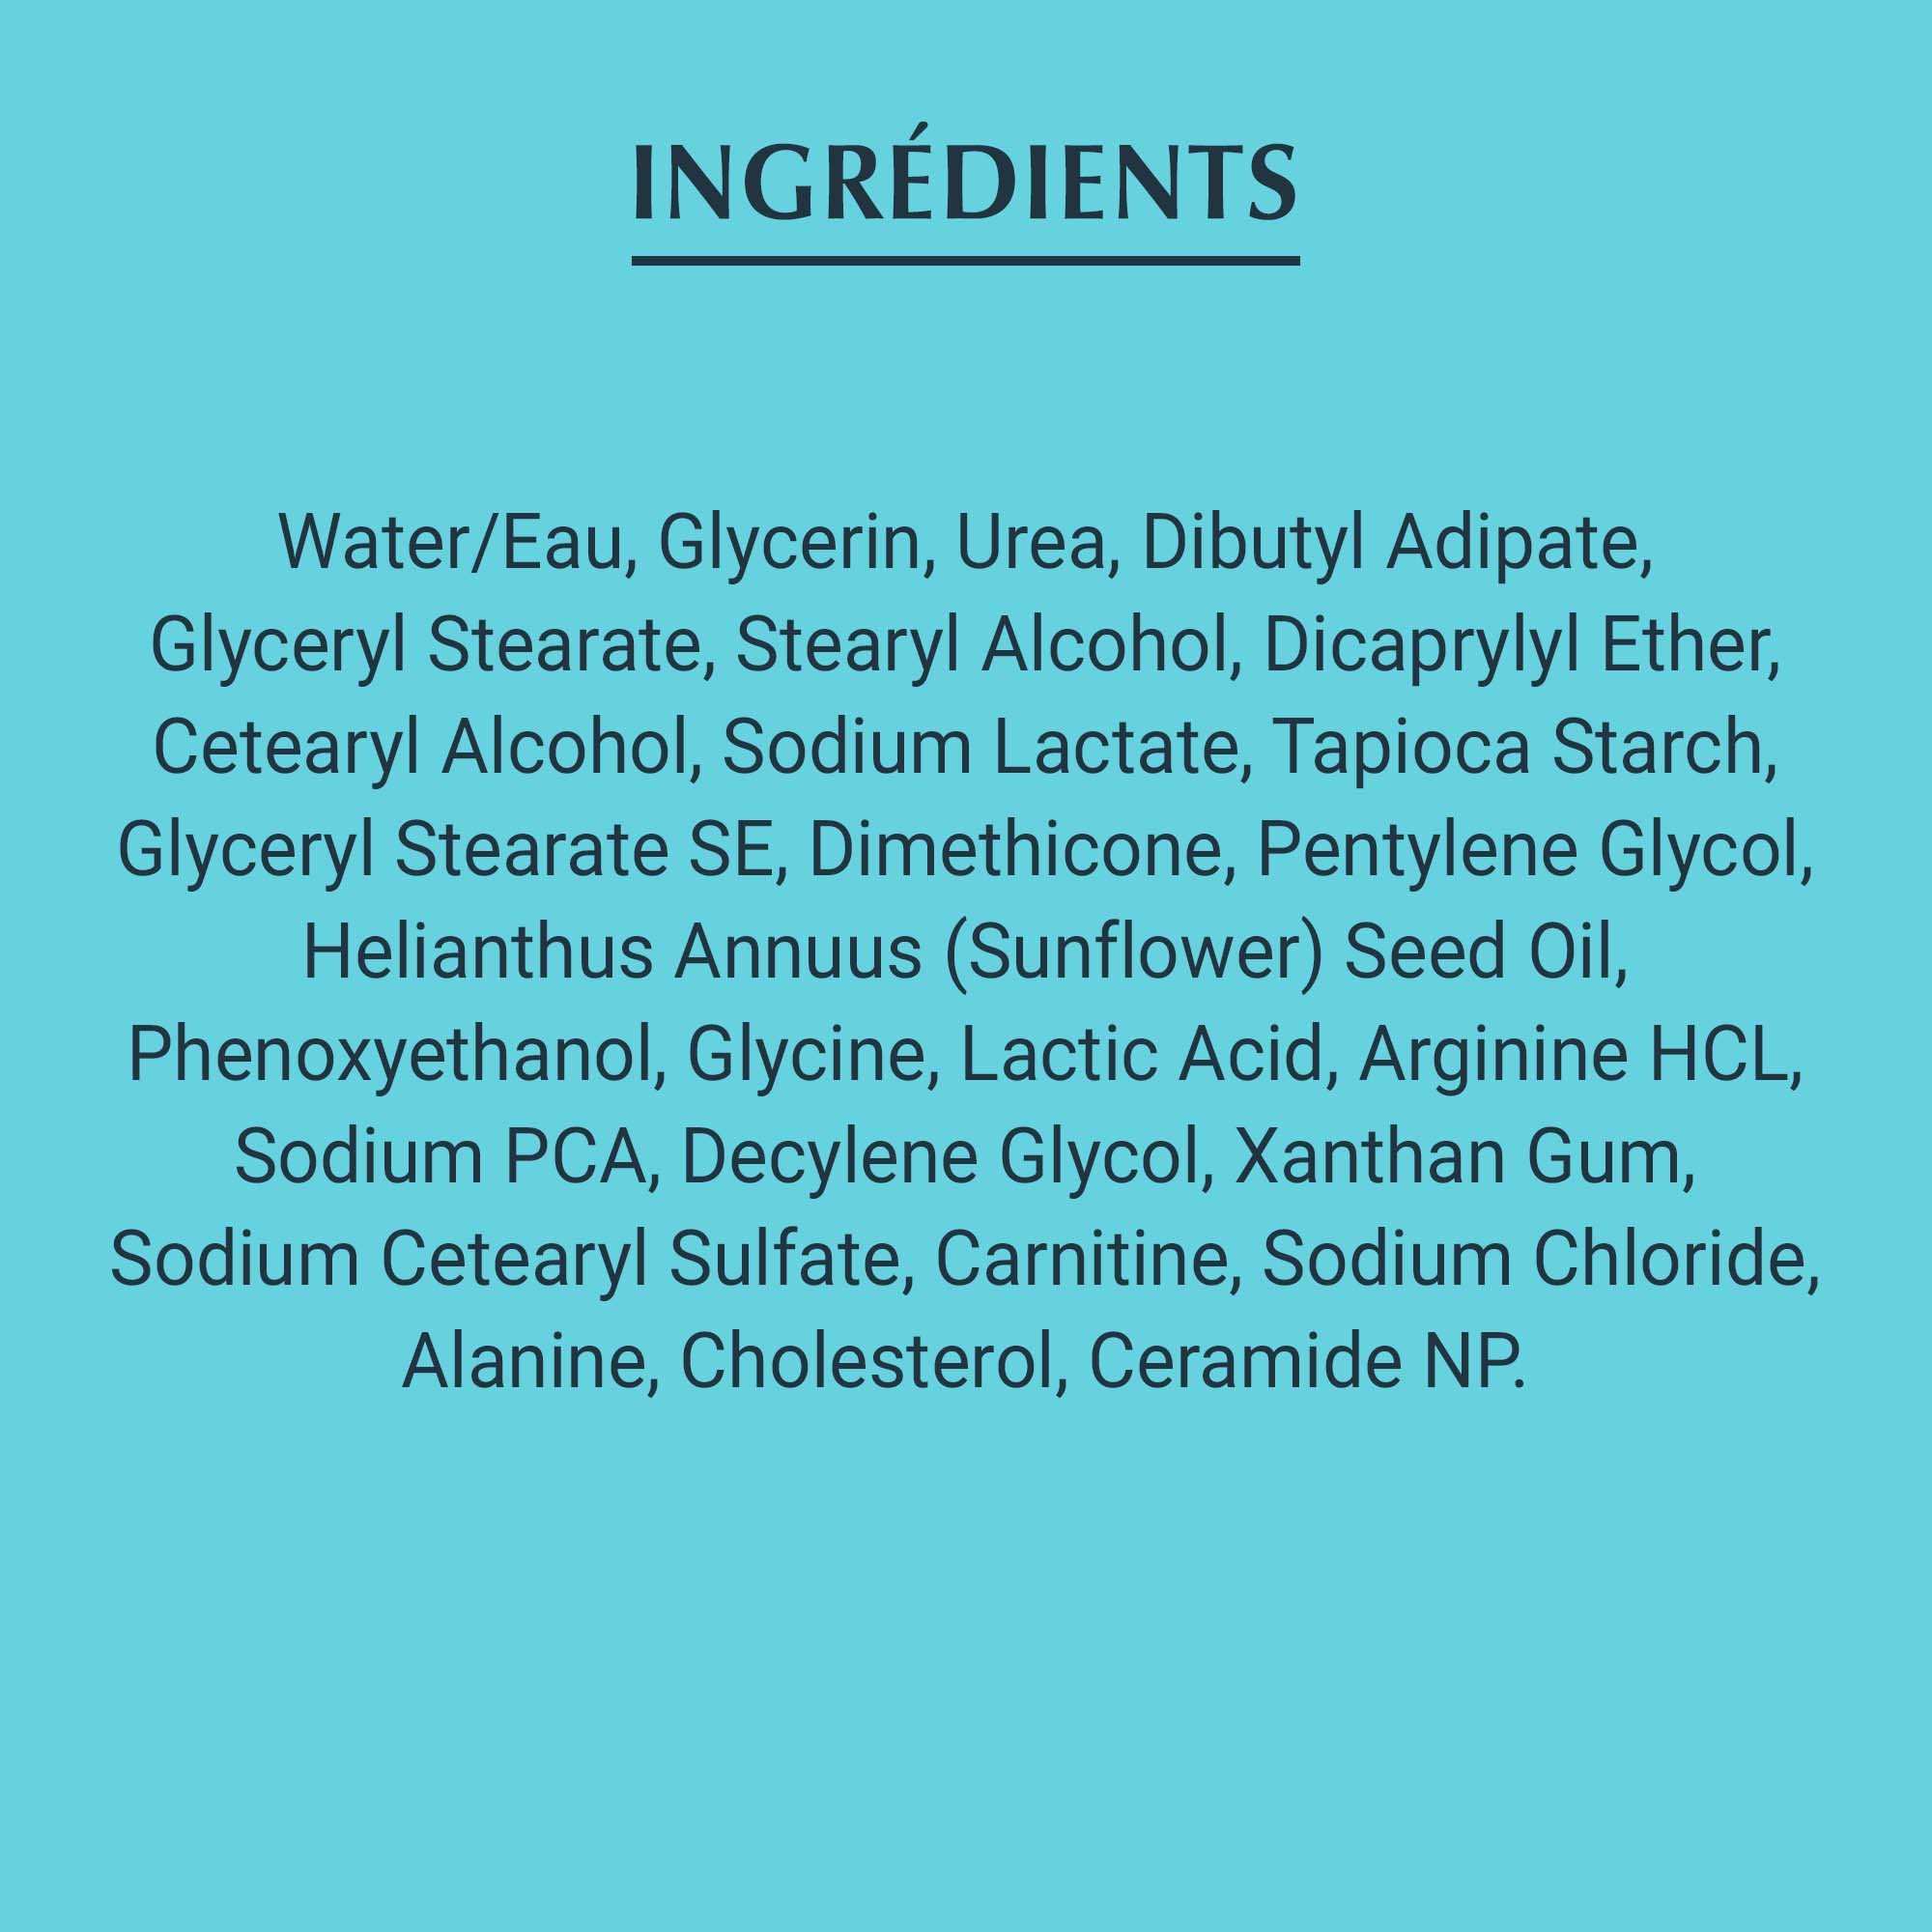 Liste des ingrédients composant la Crème pour les mains Eucerin Complete Repair, sur fond bleu sarcelle.